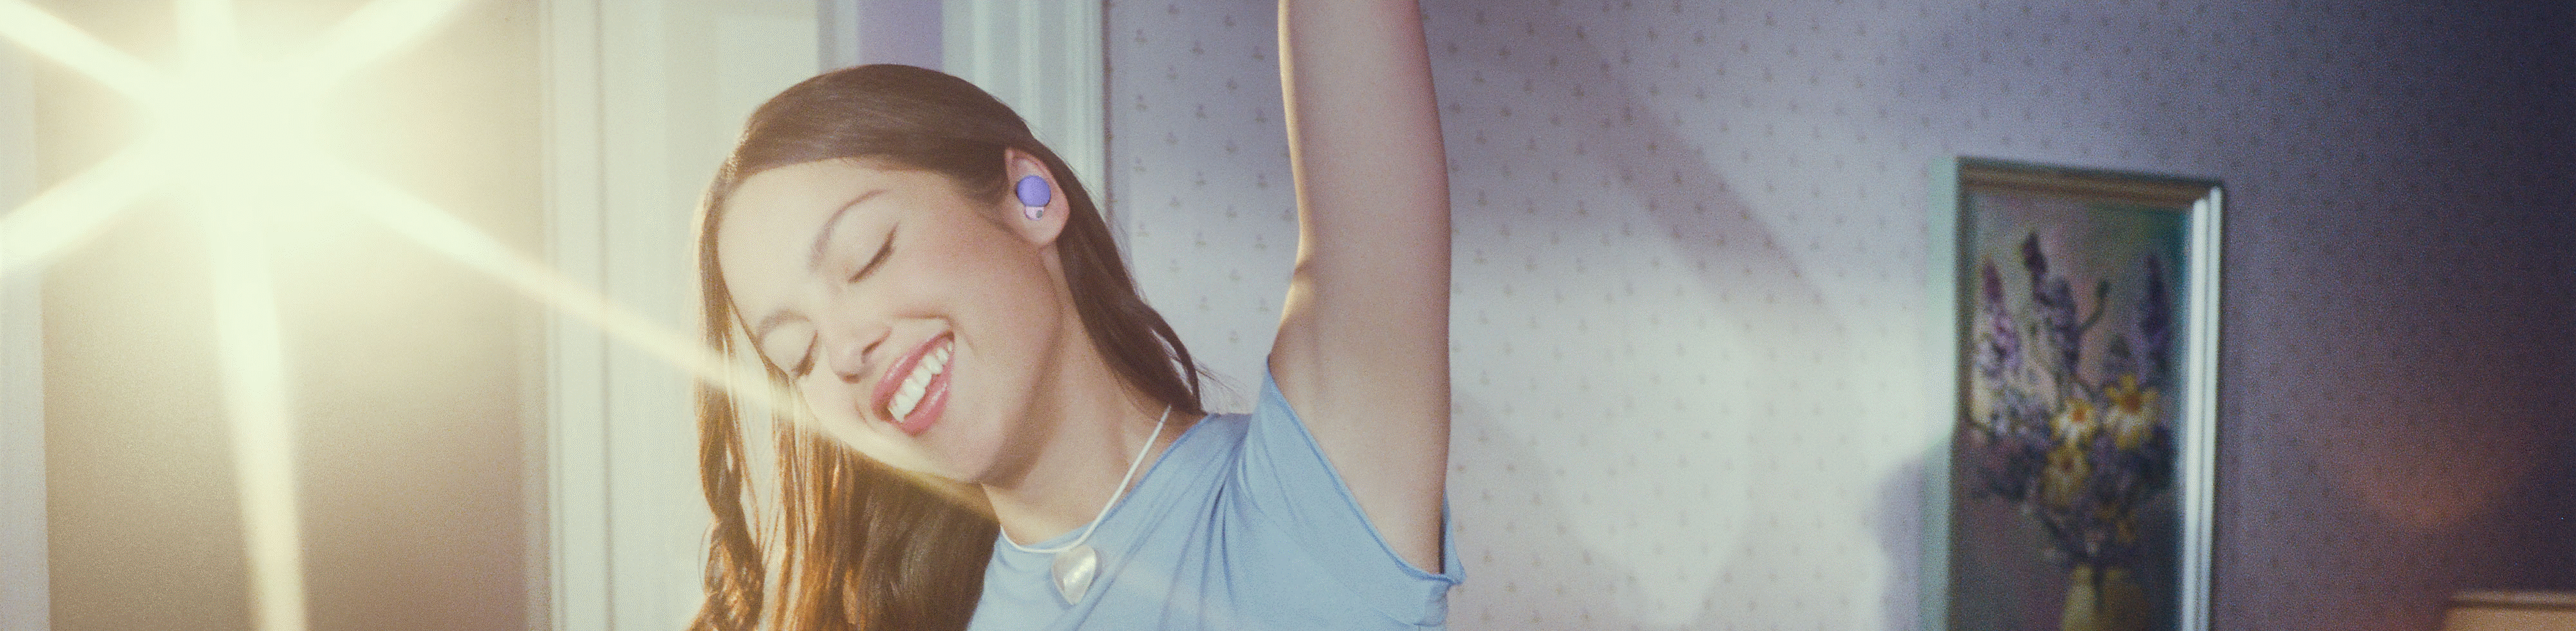 Imagen de Olivia usando audífonos LinkBuds S de color violeta y levantando un brazo sobre su cabeza con una luz brillante de fondo